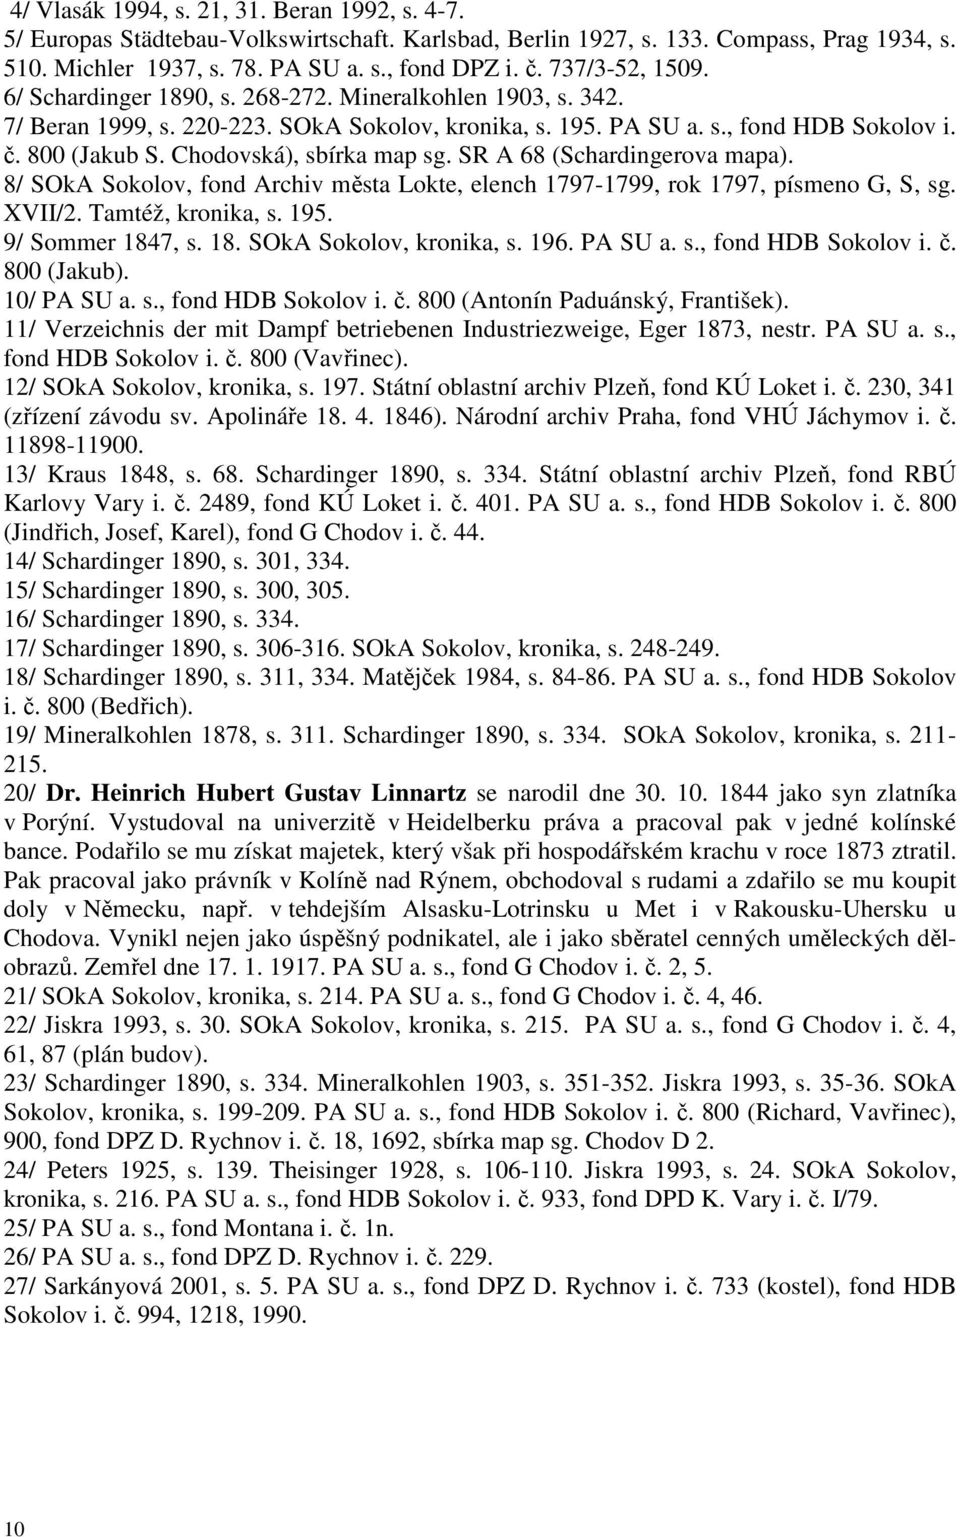 Chodovská), sbírka map sg. SR A 68 (Schardingerova mapa). 8/ SOkA Sokolov, fond Archiv města Lokte, elench 1797-1799, rok 1797, písmeno G, S, sg. XVII/2. Tamtéž, kronika, s. 195. 9/ Sommer 1847, s.